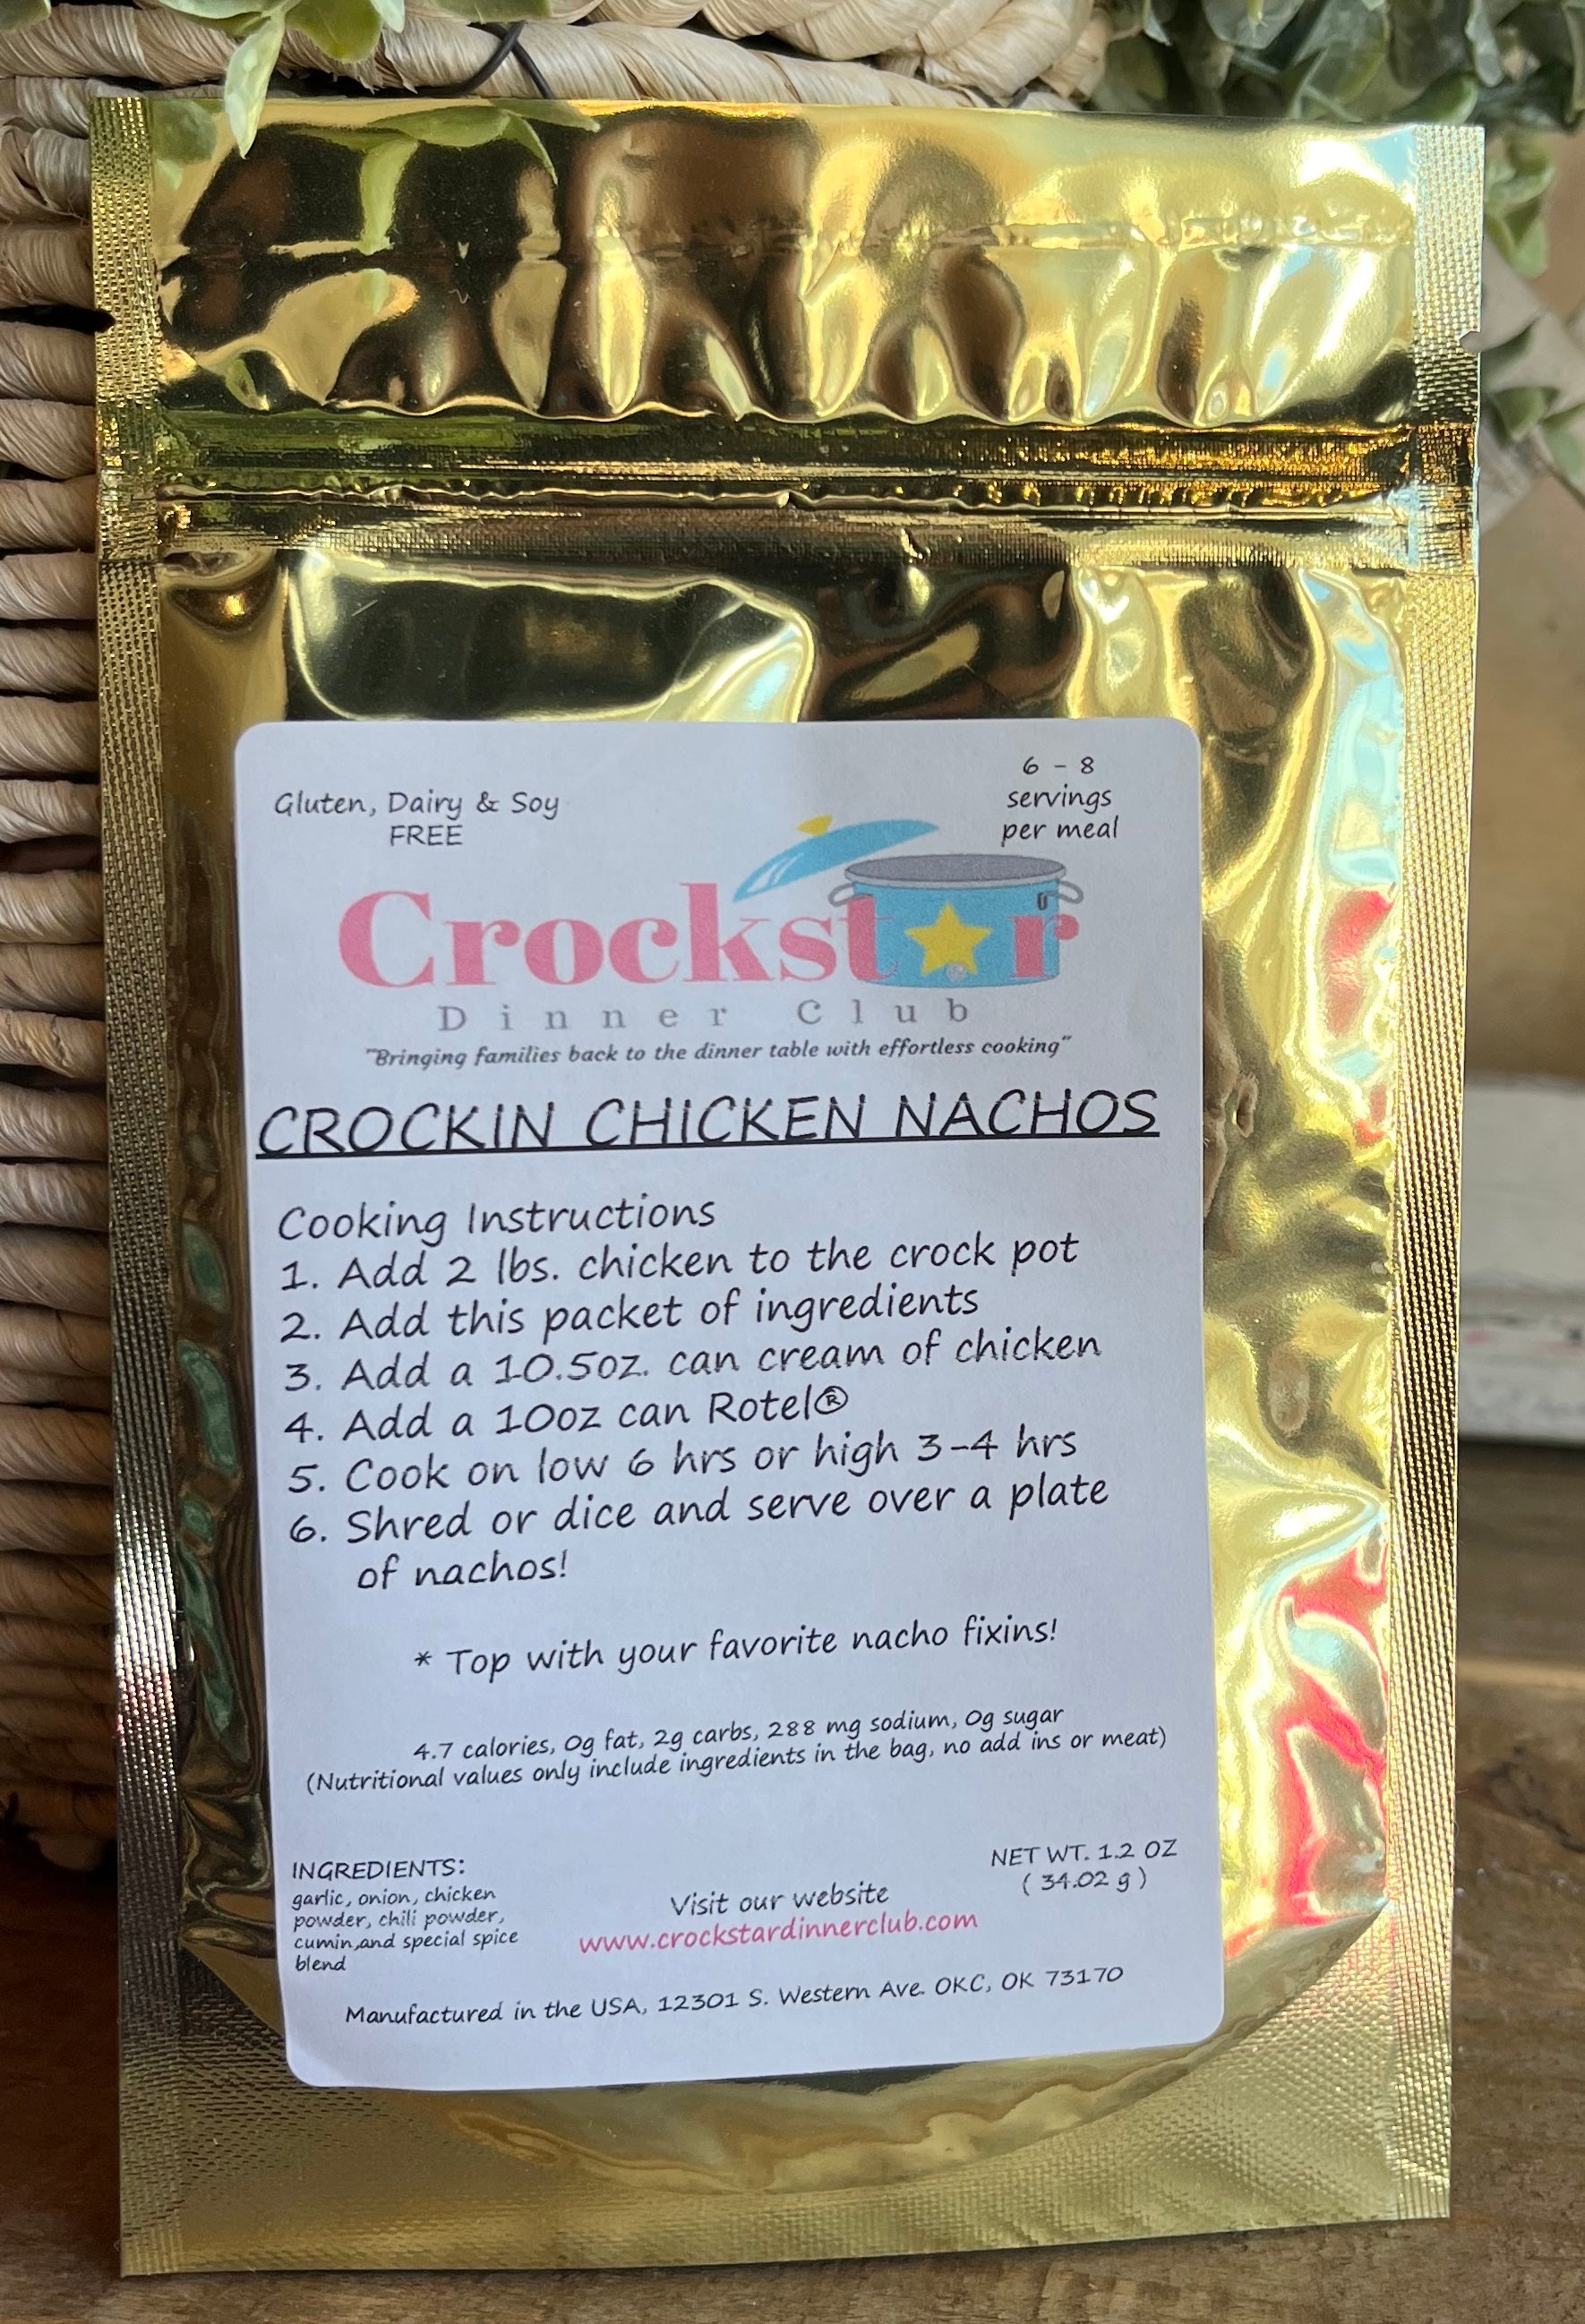 Crockstar Dinner Club - Crockin Chicken Nachos